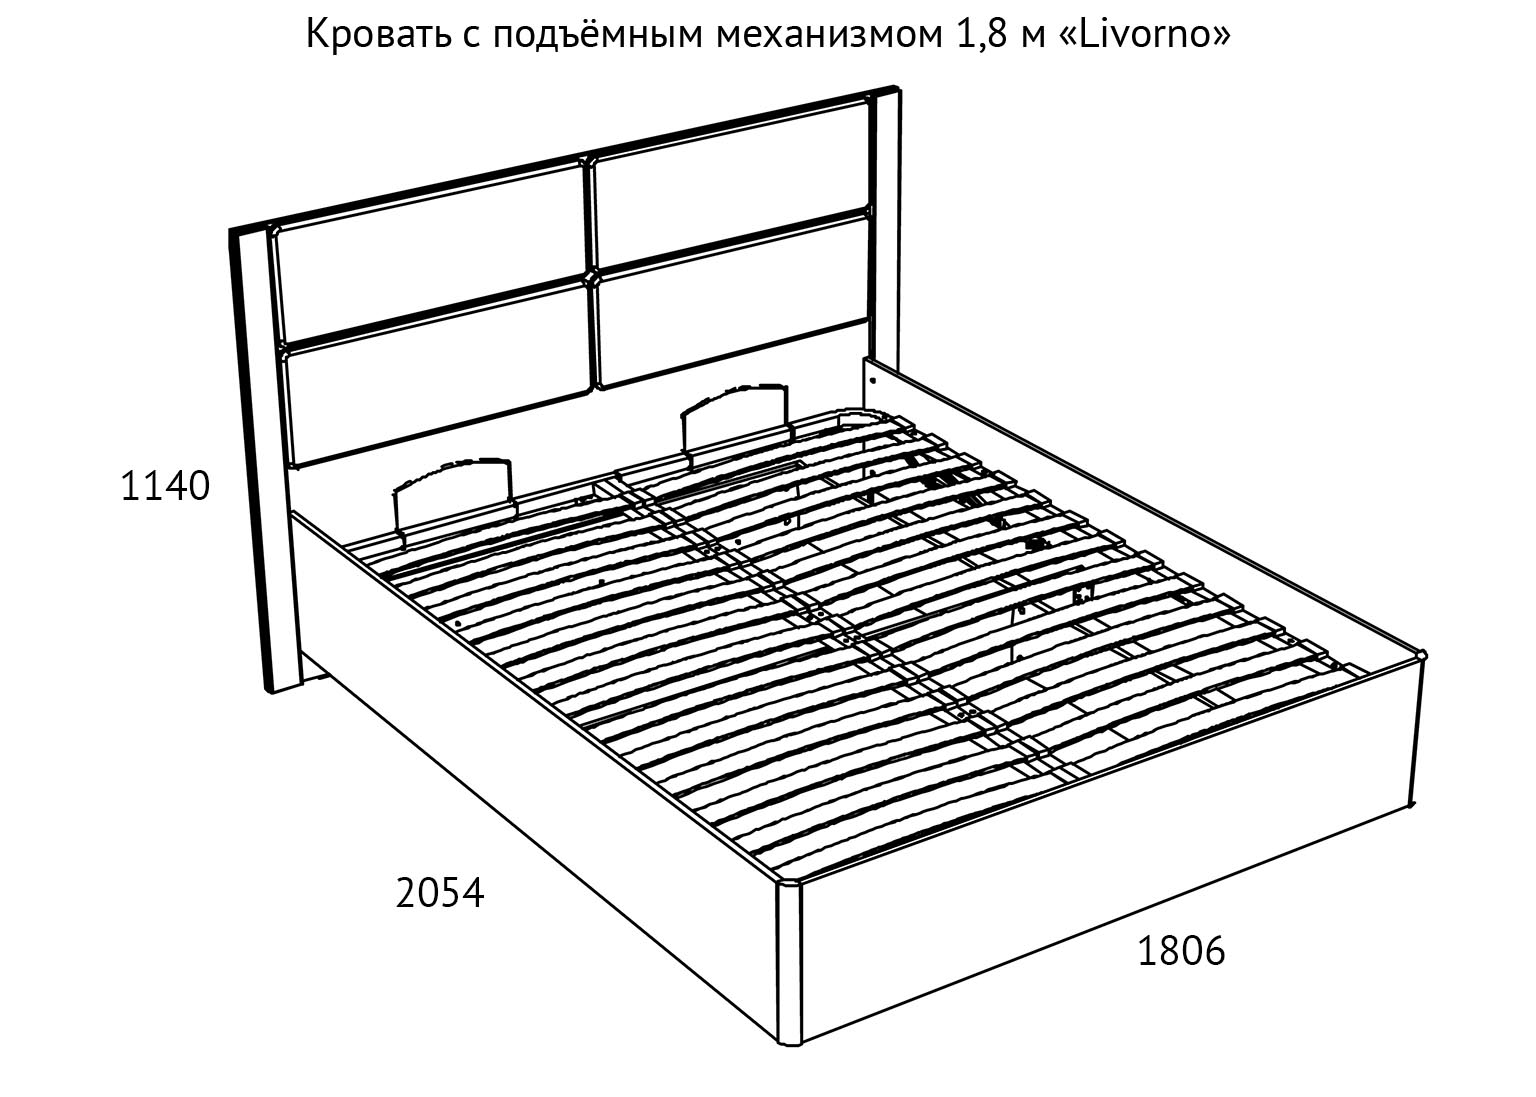 НМ 040.52 Кровать 1,8 м с подъёмным механизмом Livorno схема Мебель Краснодар